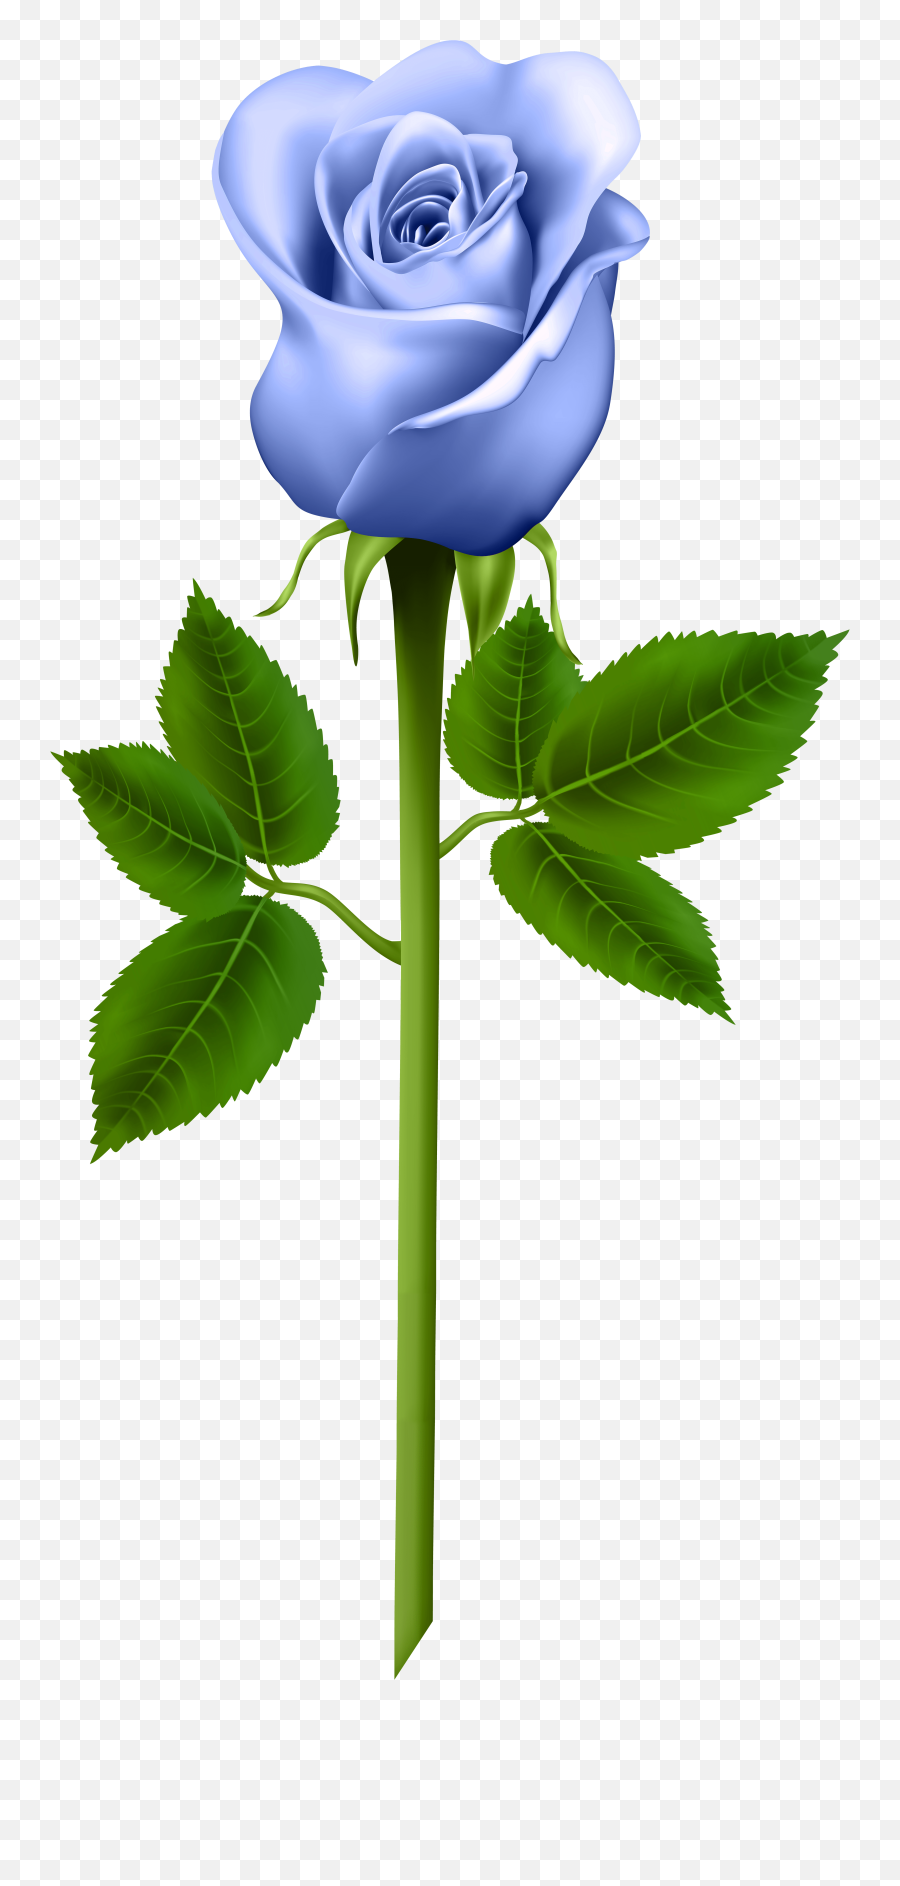 Flower Crown Emoji Transparent Backroind - Vtwctr Rose Transparent Background Blue,Wreath Emoji Transparent Background